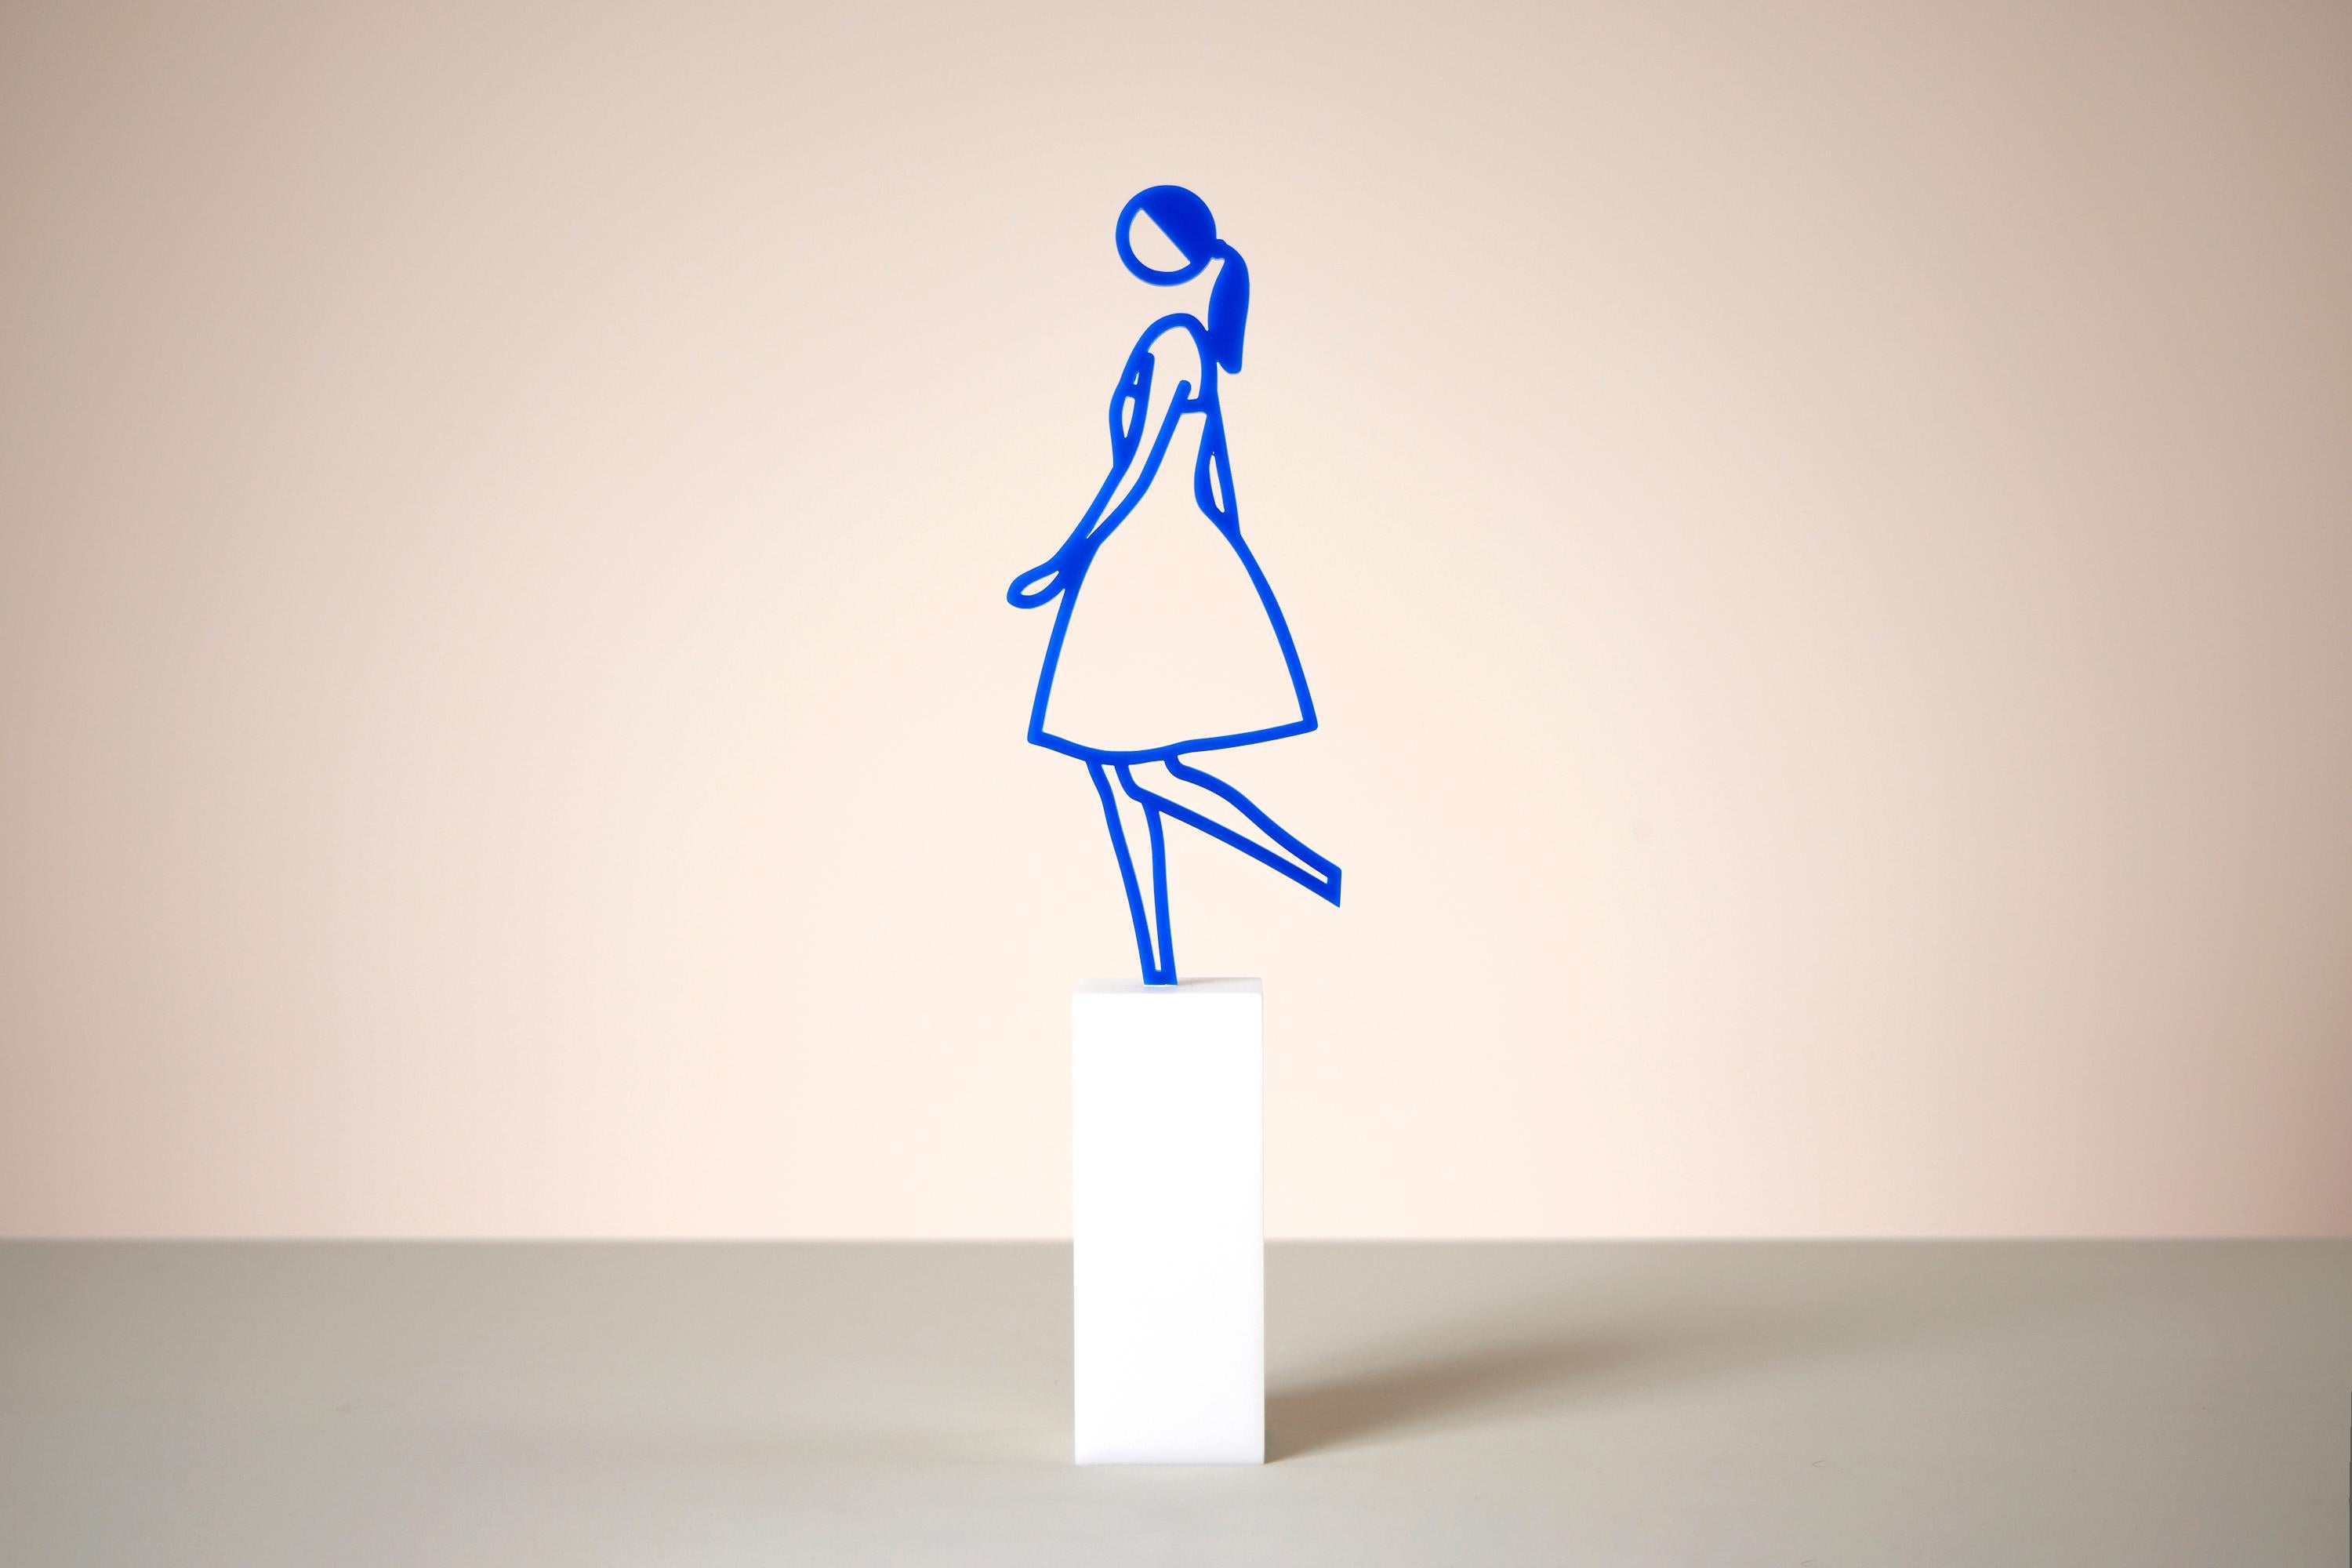 Amelia -- Sculpture, Woman Figure, Moving, Pop Art by Julian Opie